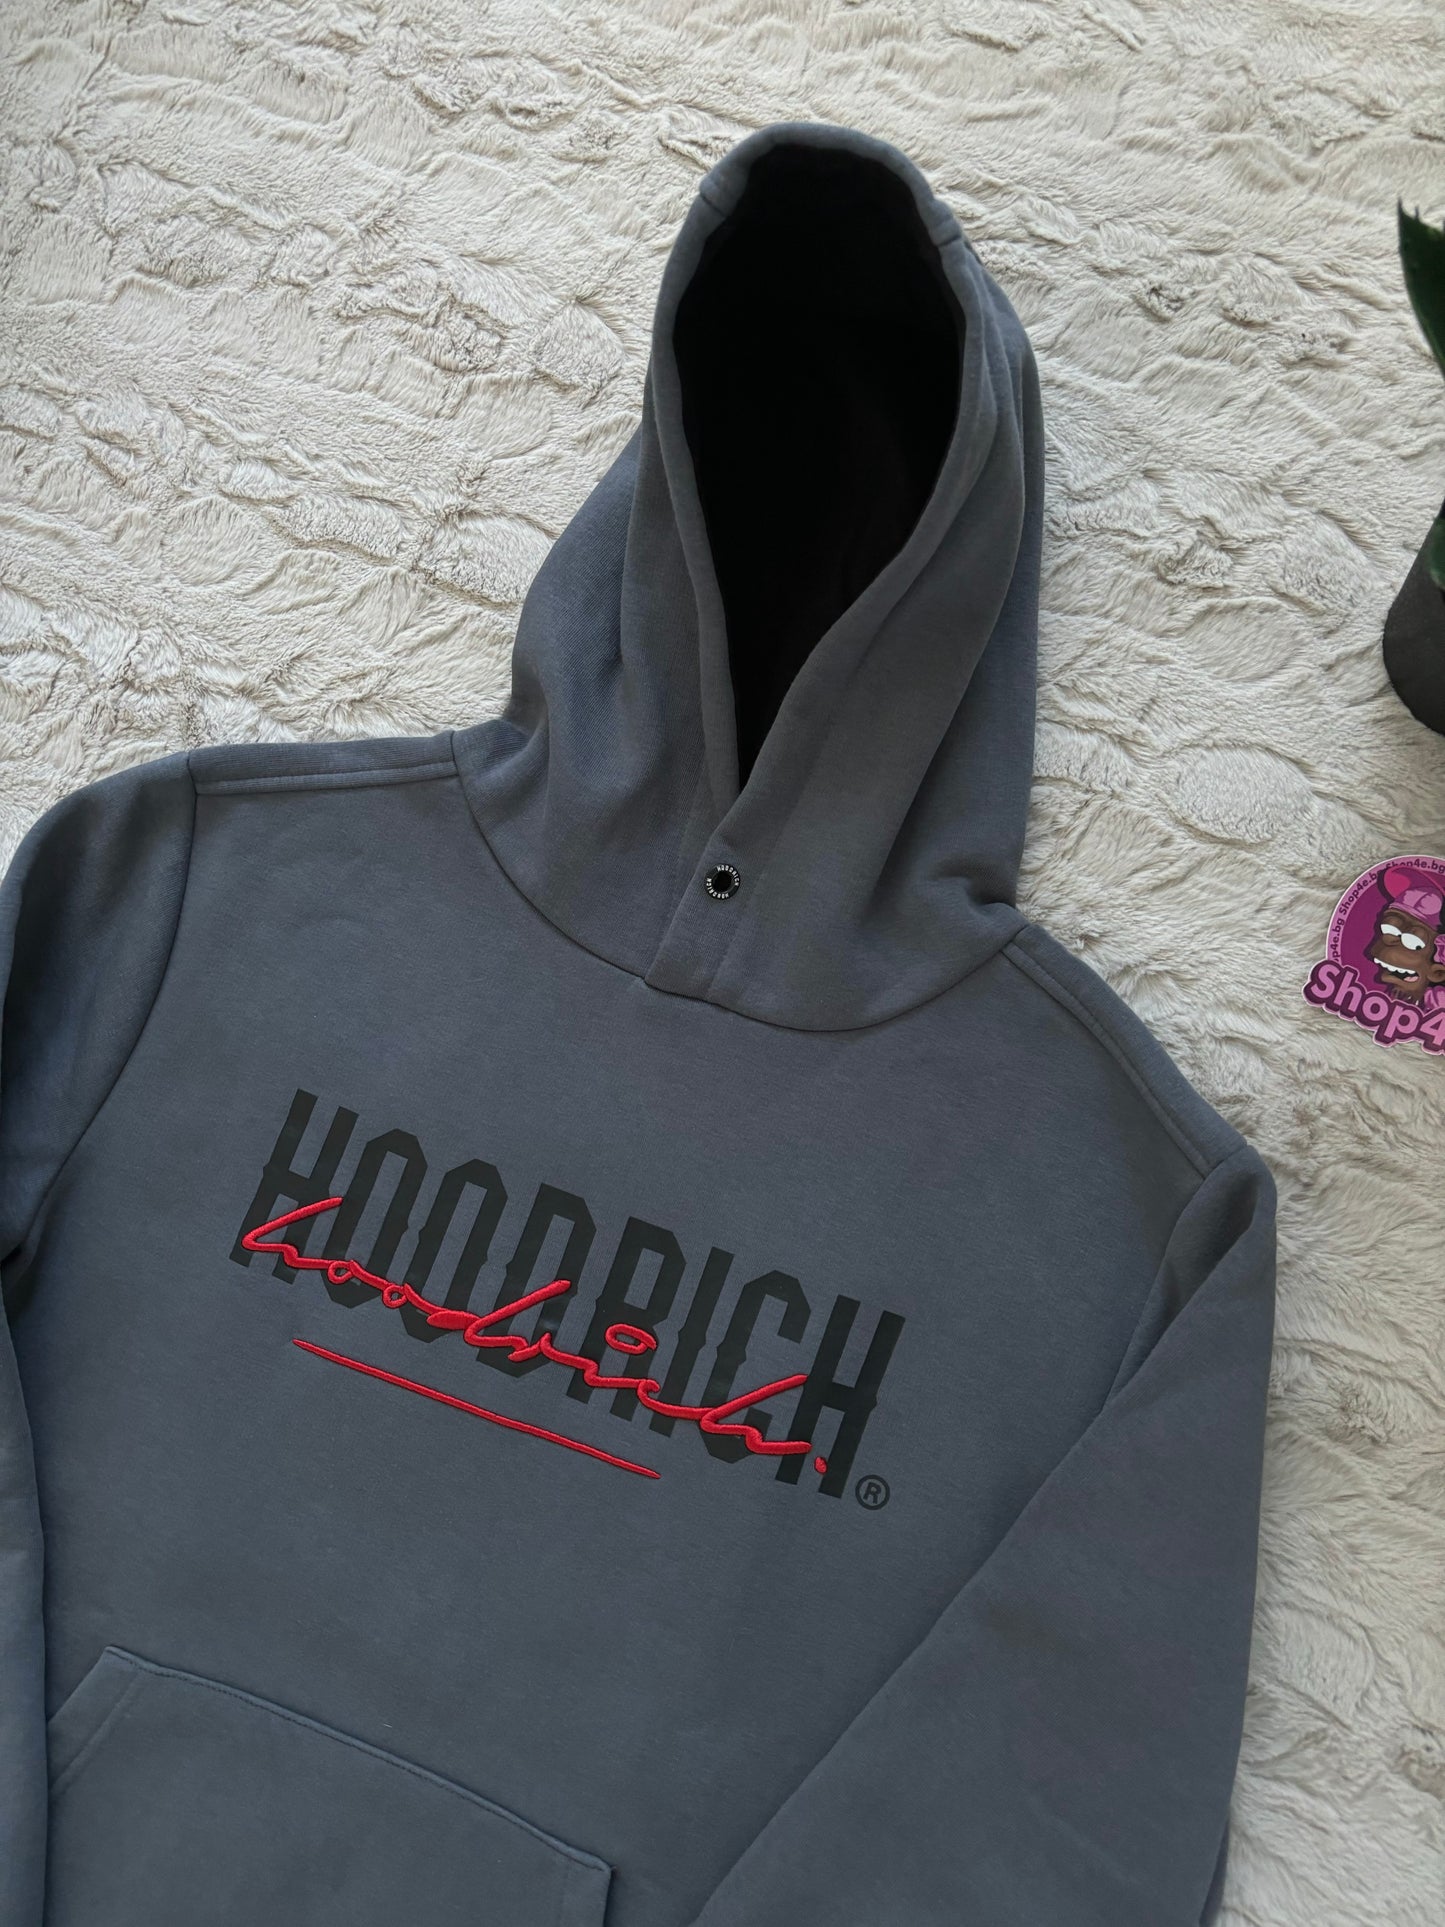 HOODRICH hoodie